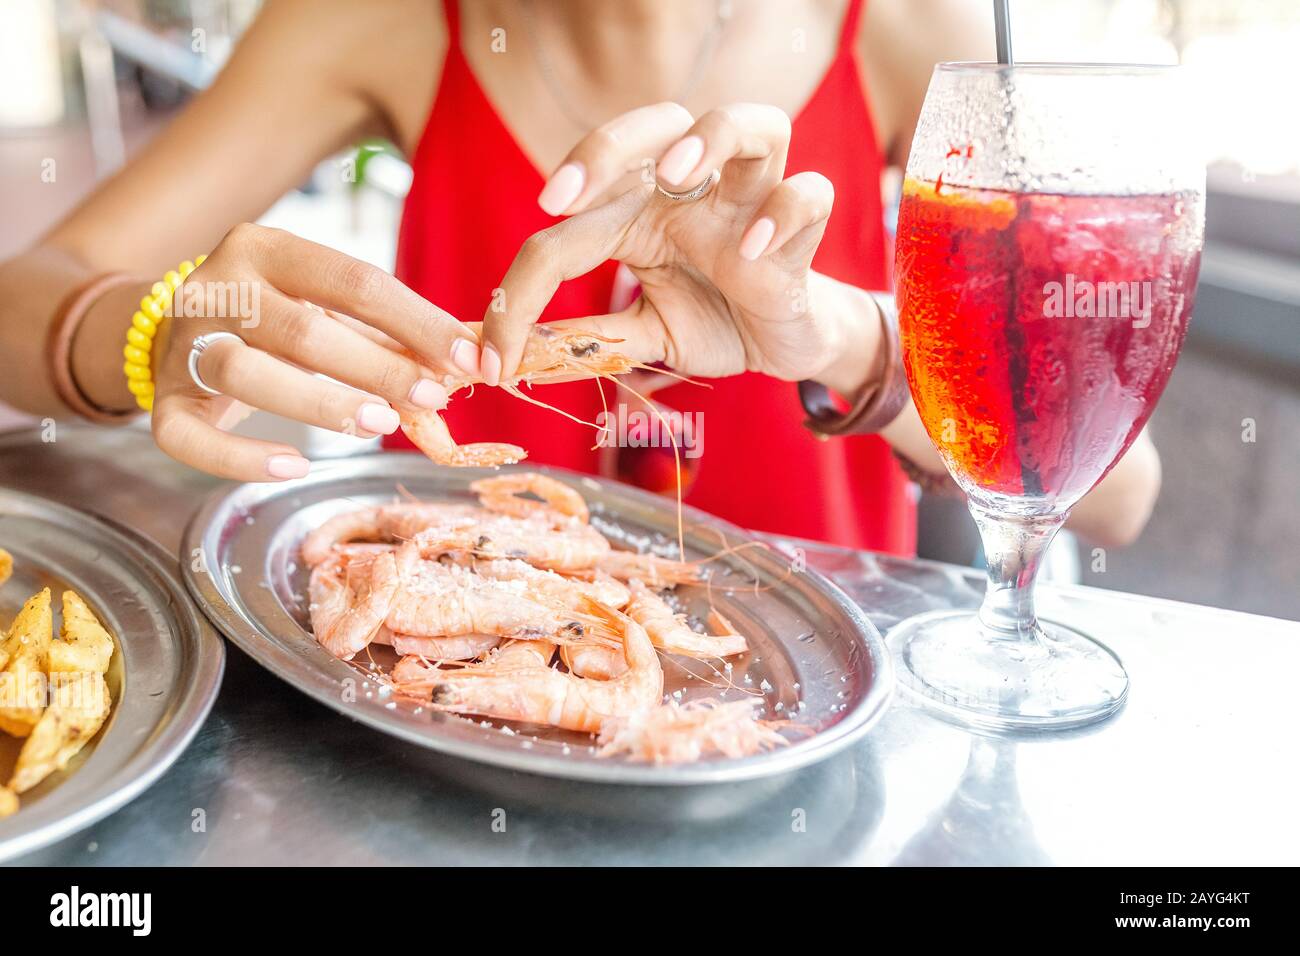 Bonne femme asiatique à chapeau manger de la cuisine espagnole locale fruits de mer grillés et crevettes Banque D'Images